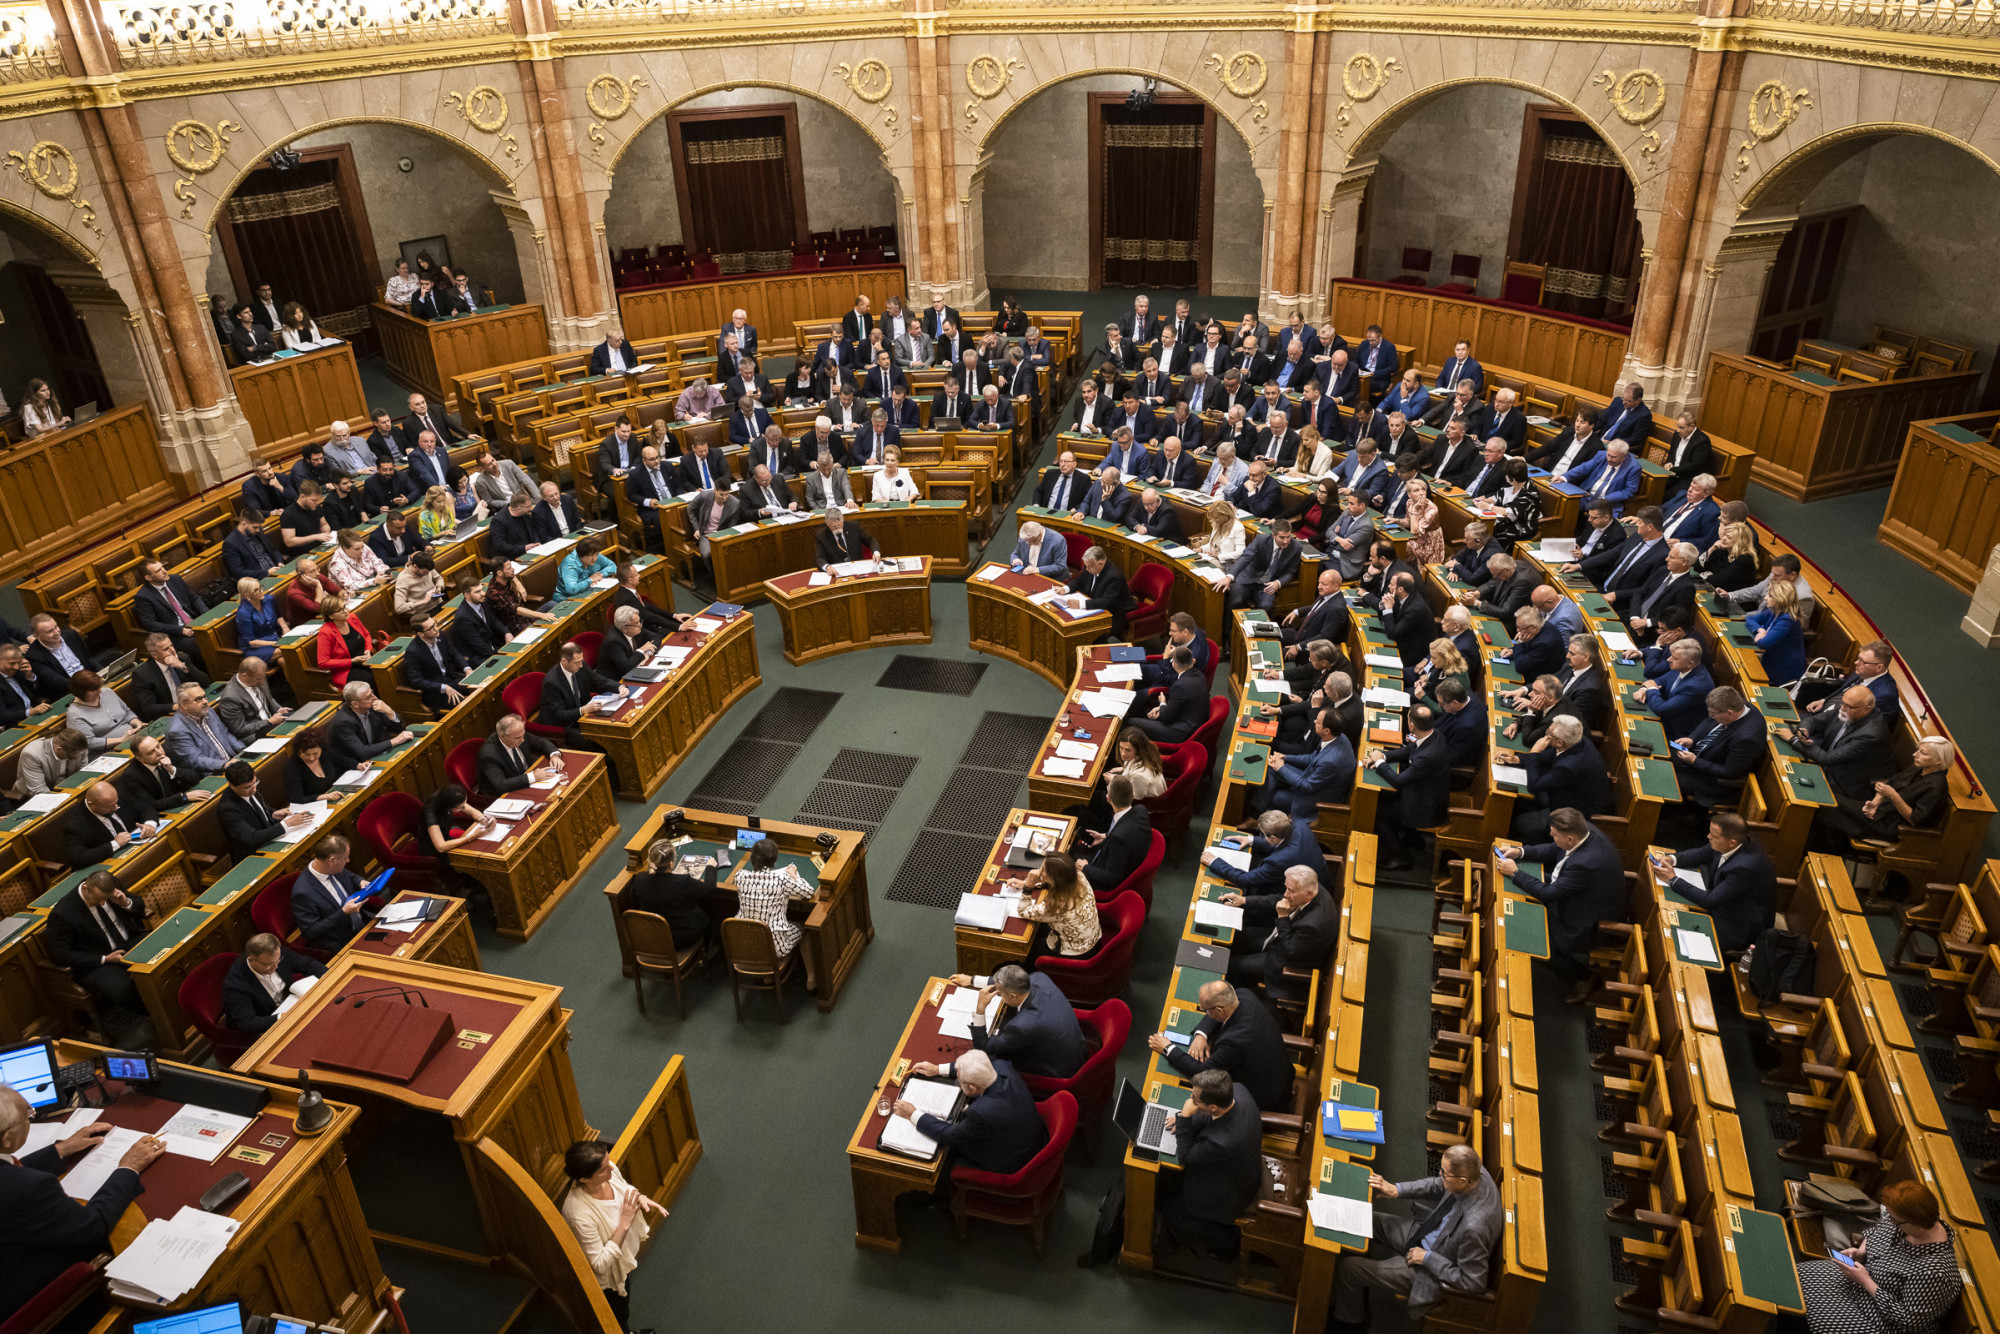 Rendkívüli parlamenti ülés lesz jövő héten a szuverenitásvédelminek nevezett törvényjavaslatról